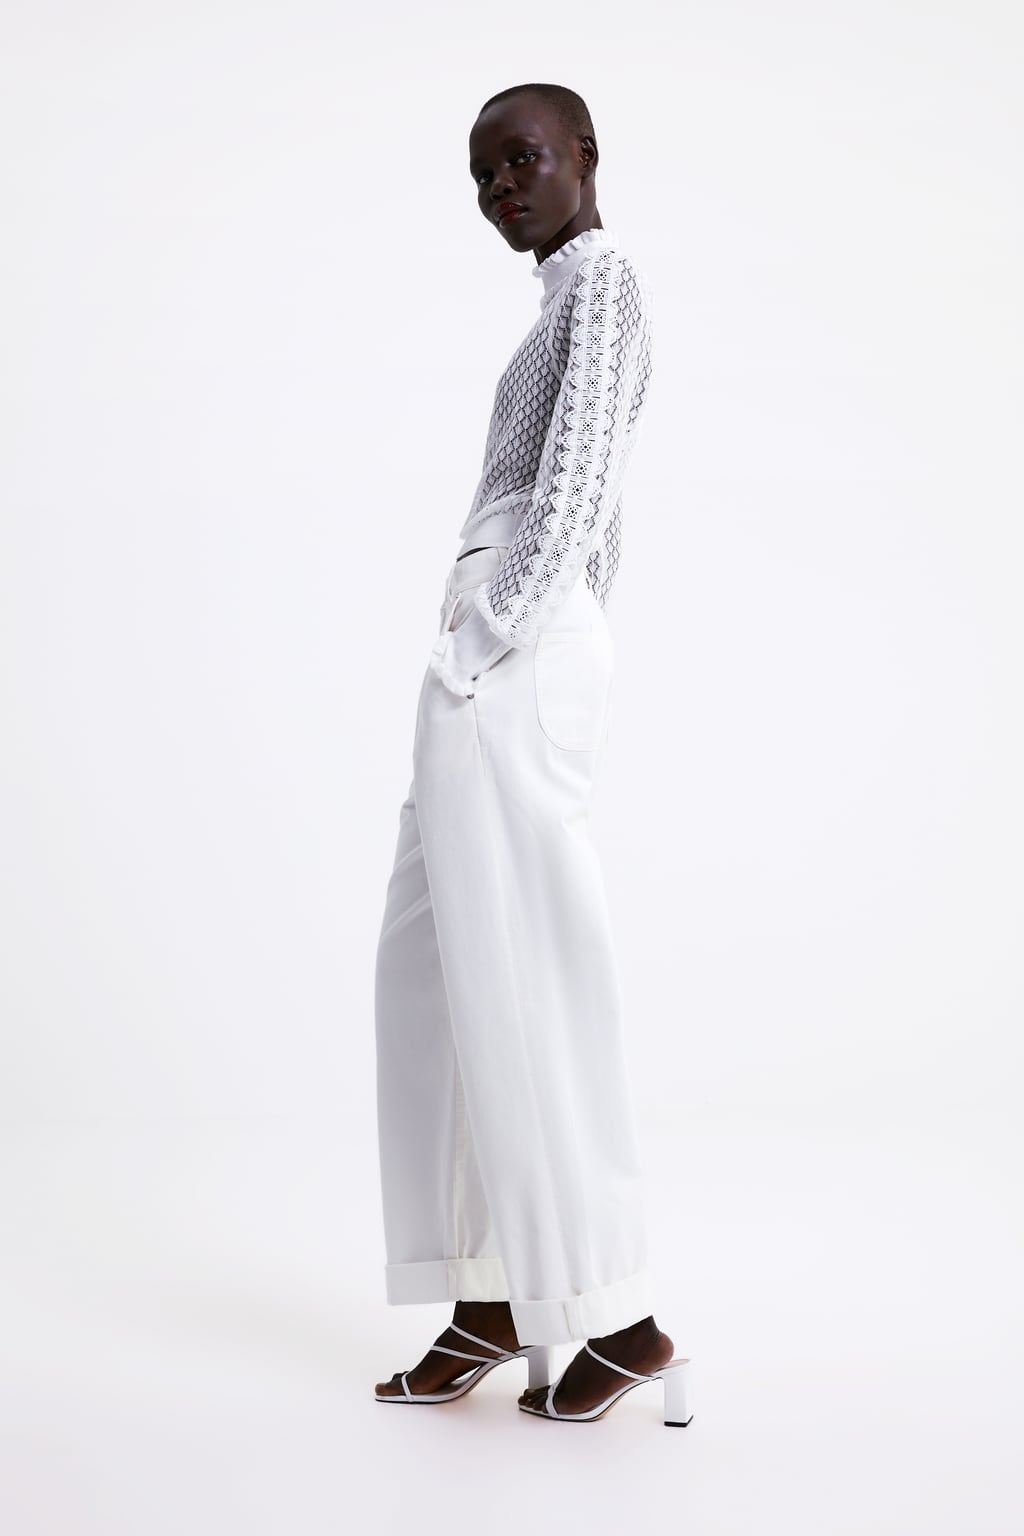 El color blanco, tendencia protagonista en la colección primavera 2019 Zara - Modalia.es